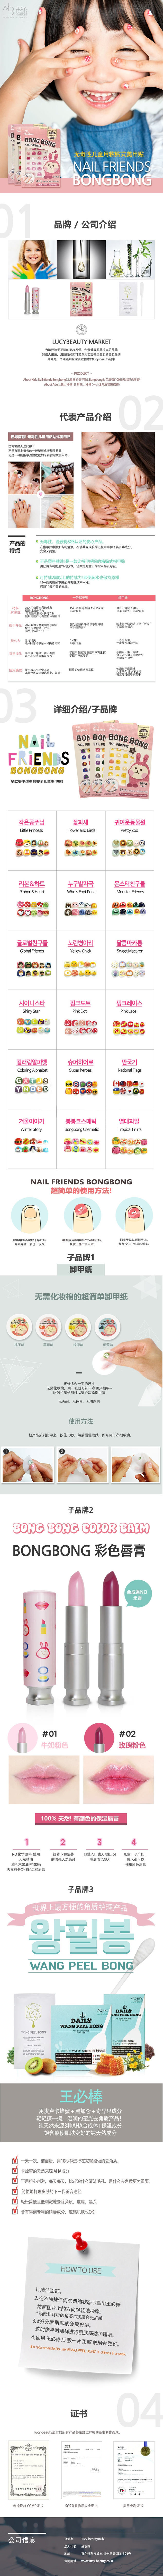 BONG BONG 韩国儿童宝宝3-7岁美甲指甲贴小朋友安全无毒粘贴式指甲贴纸 1pc